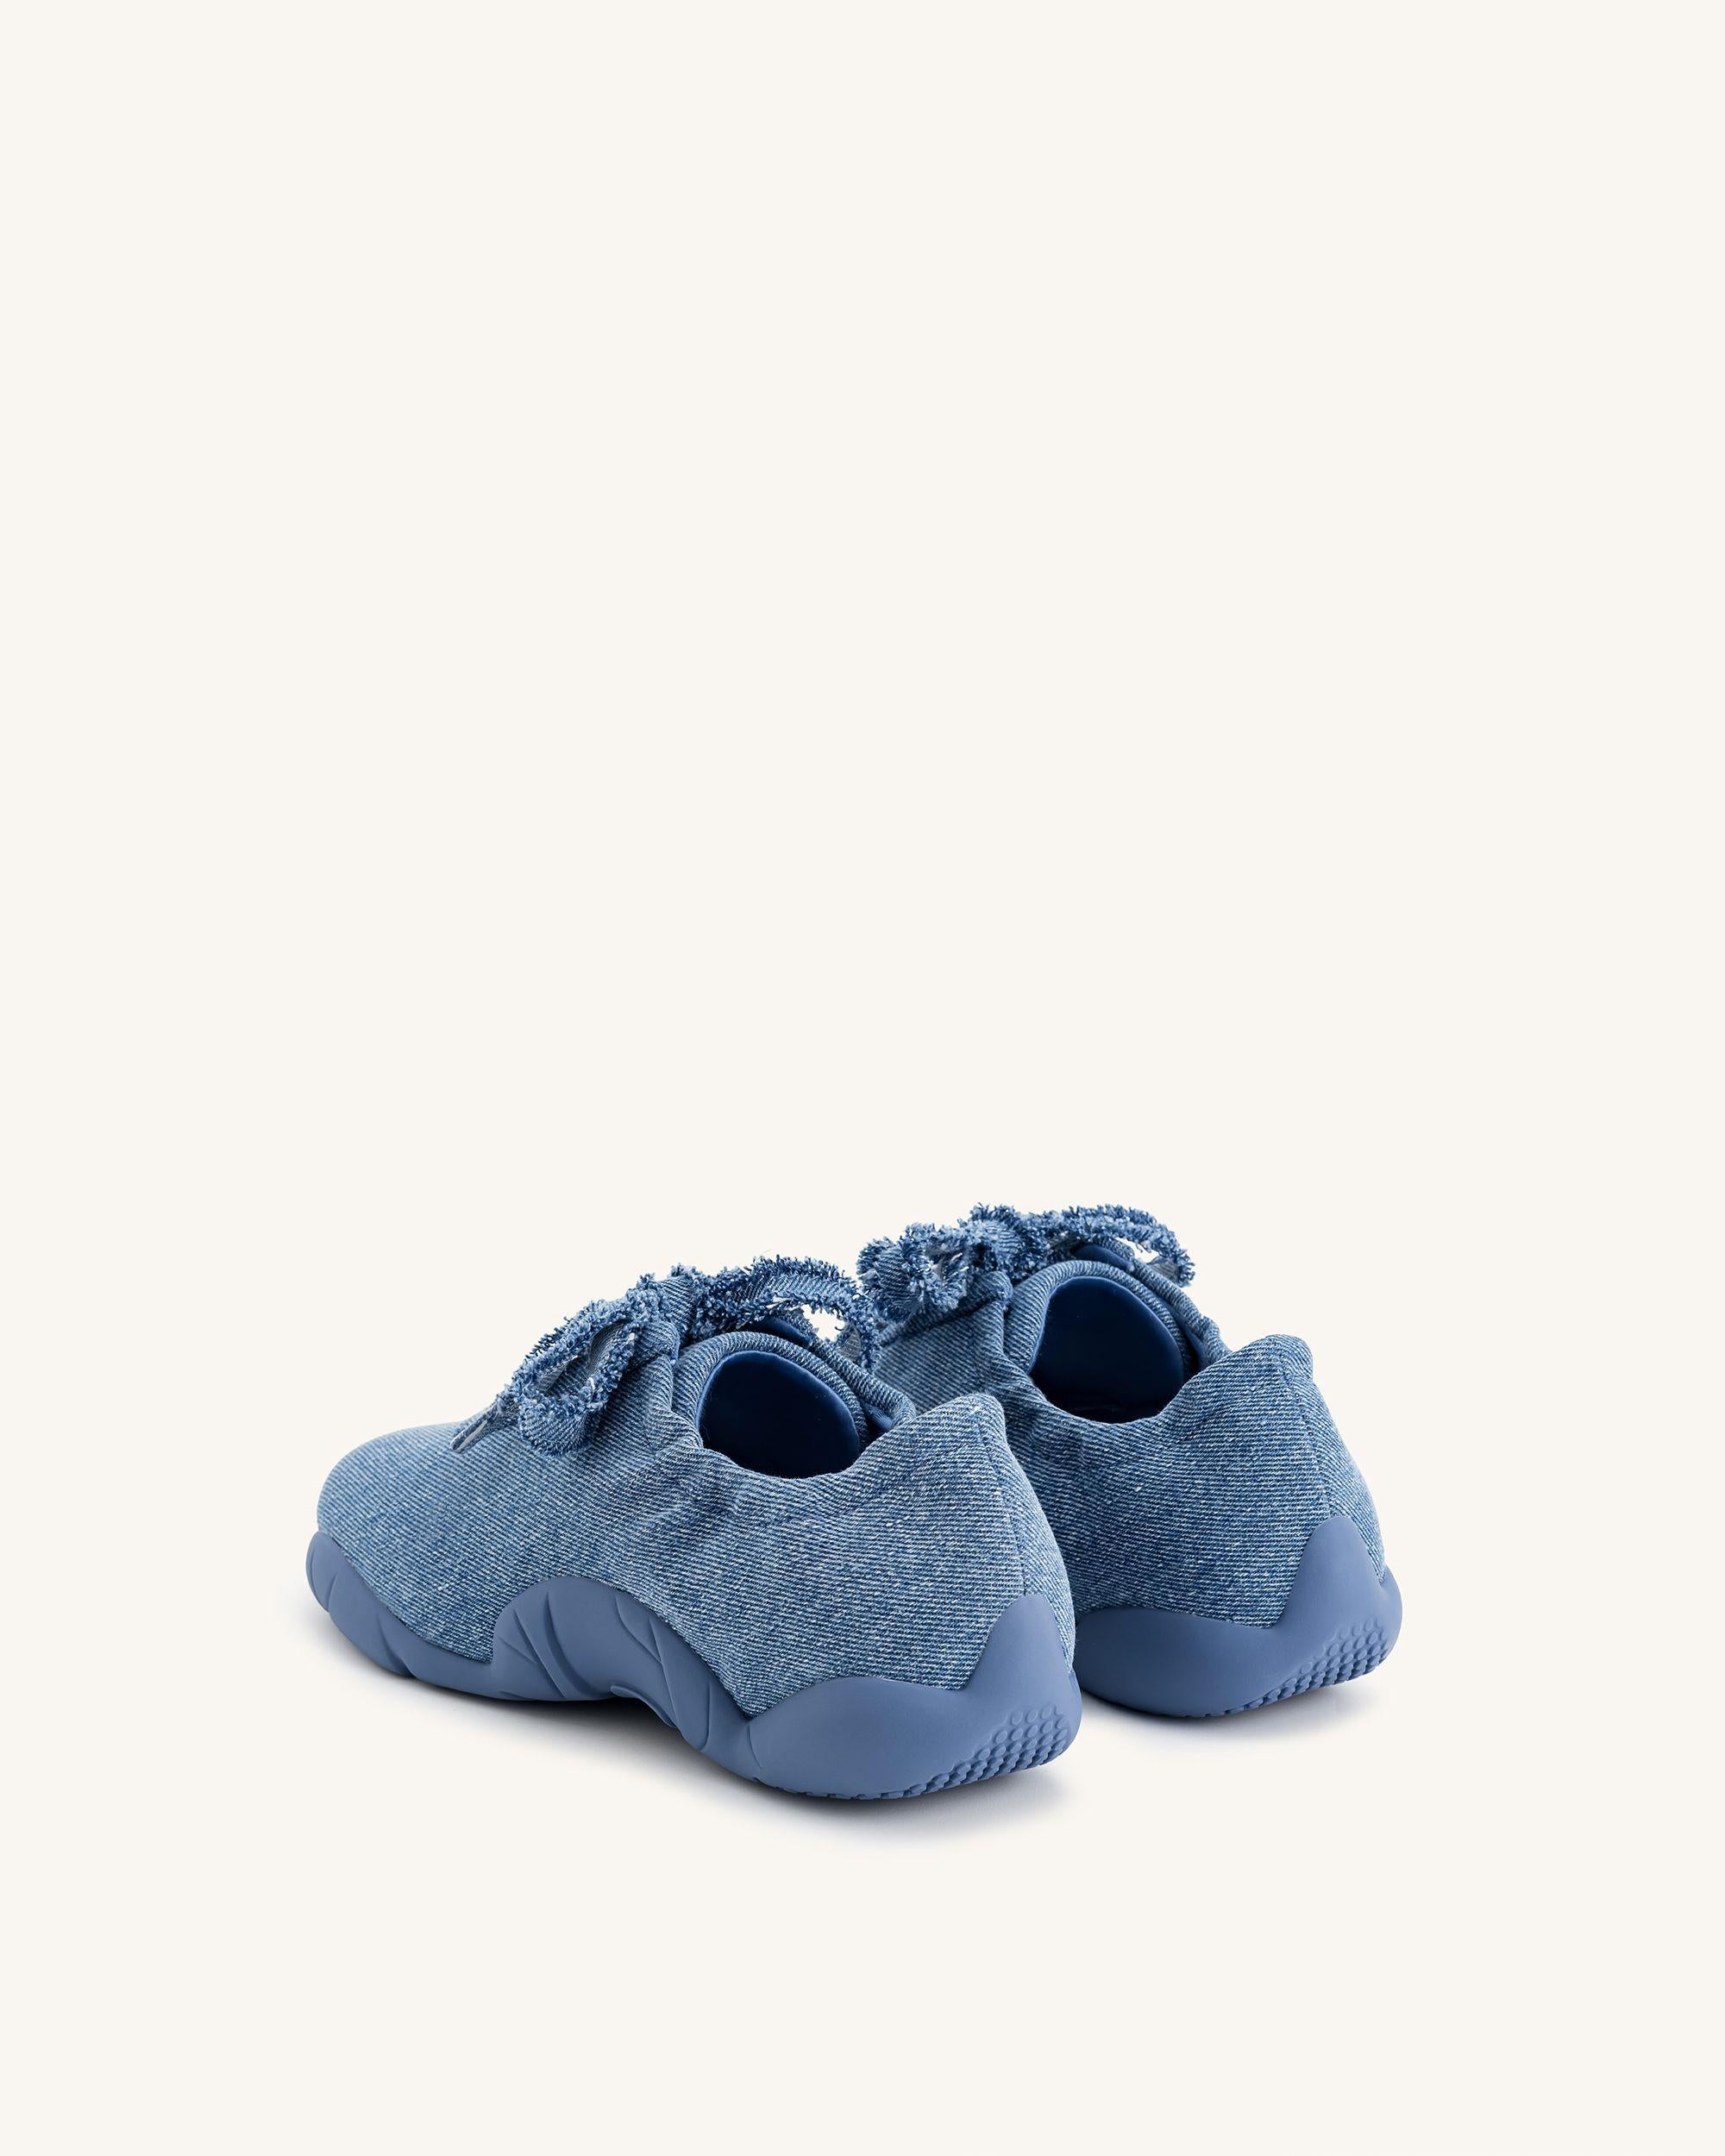 Flavia 芭蕾舞鞋 - 藍色